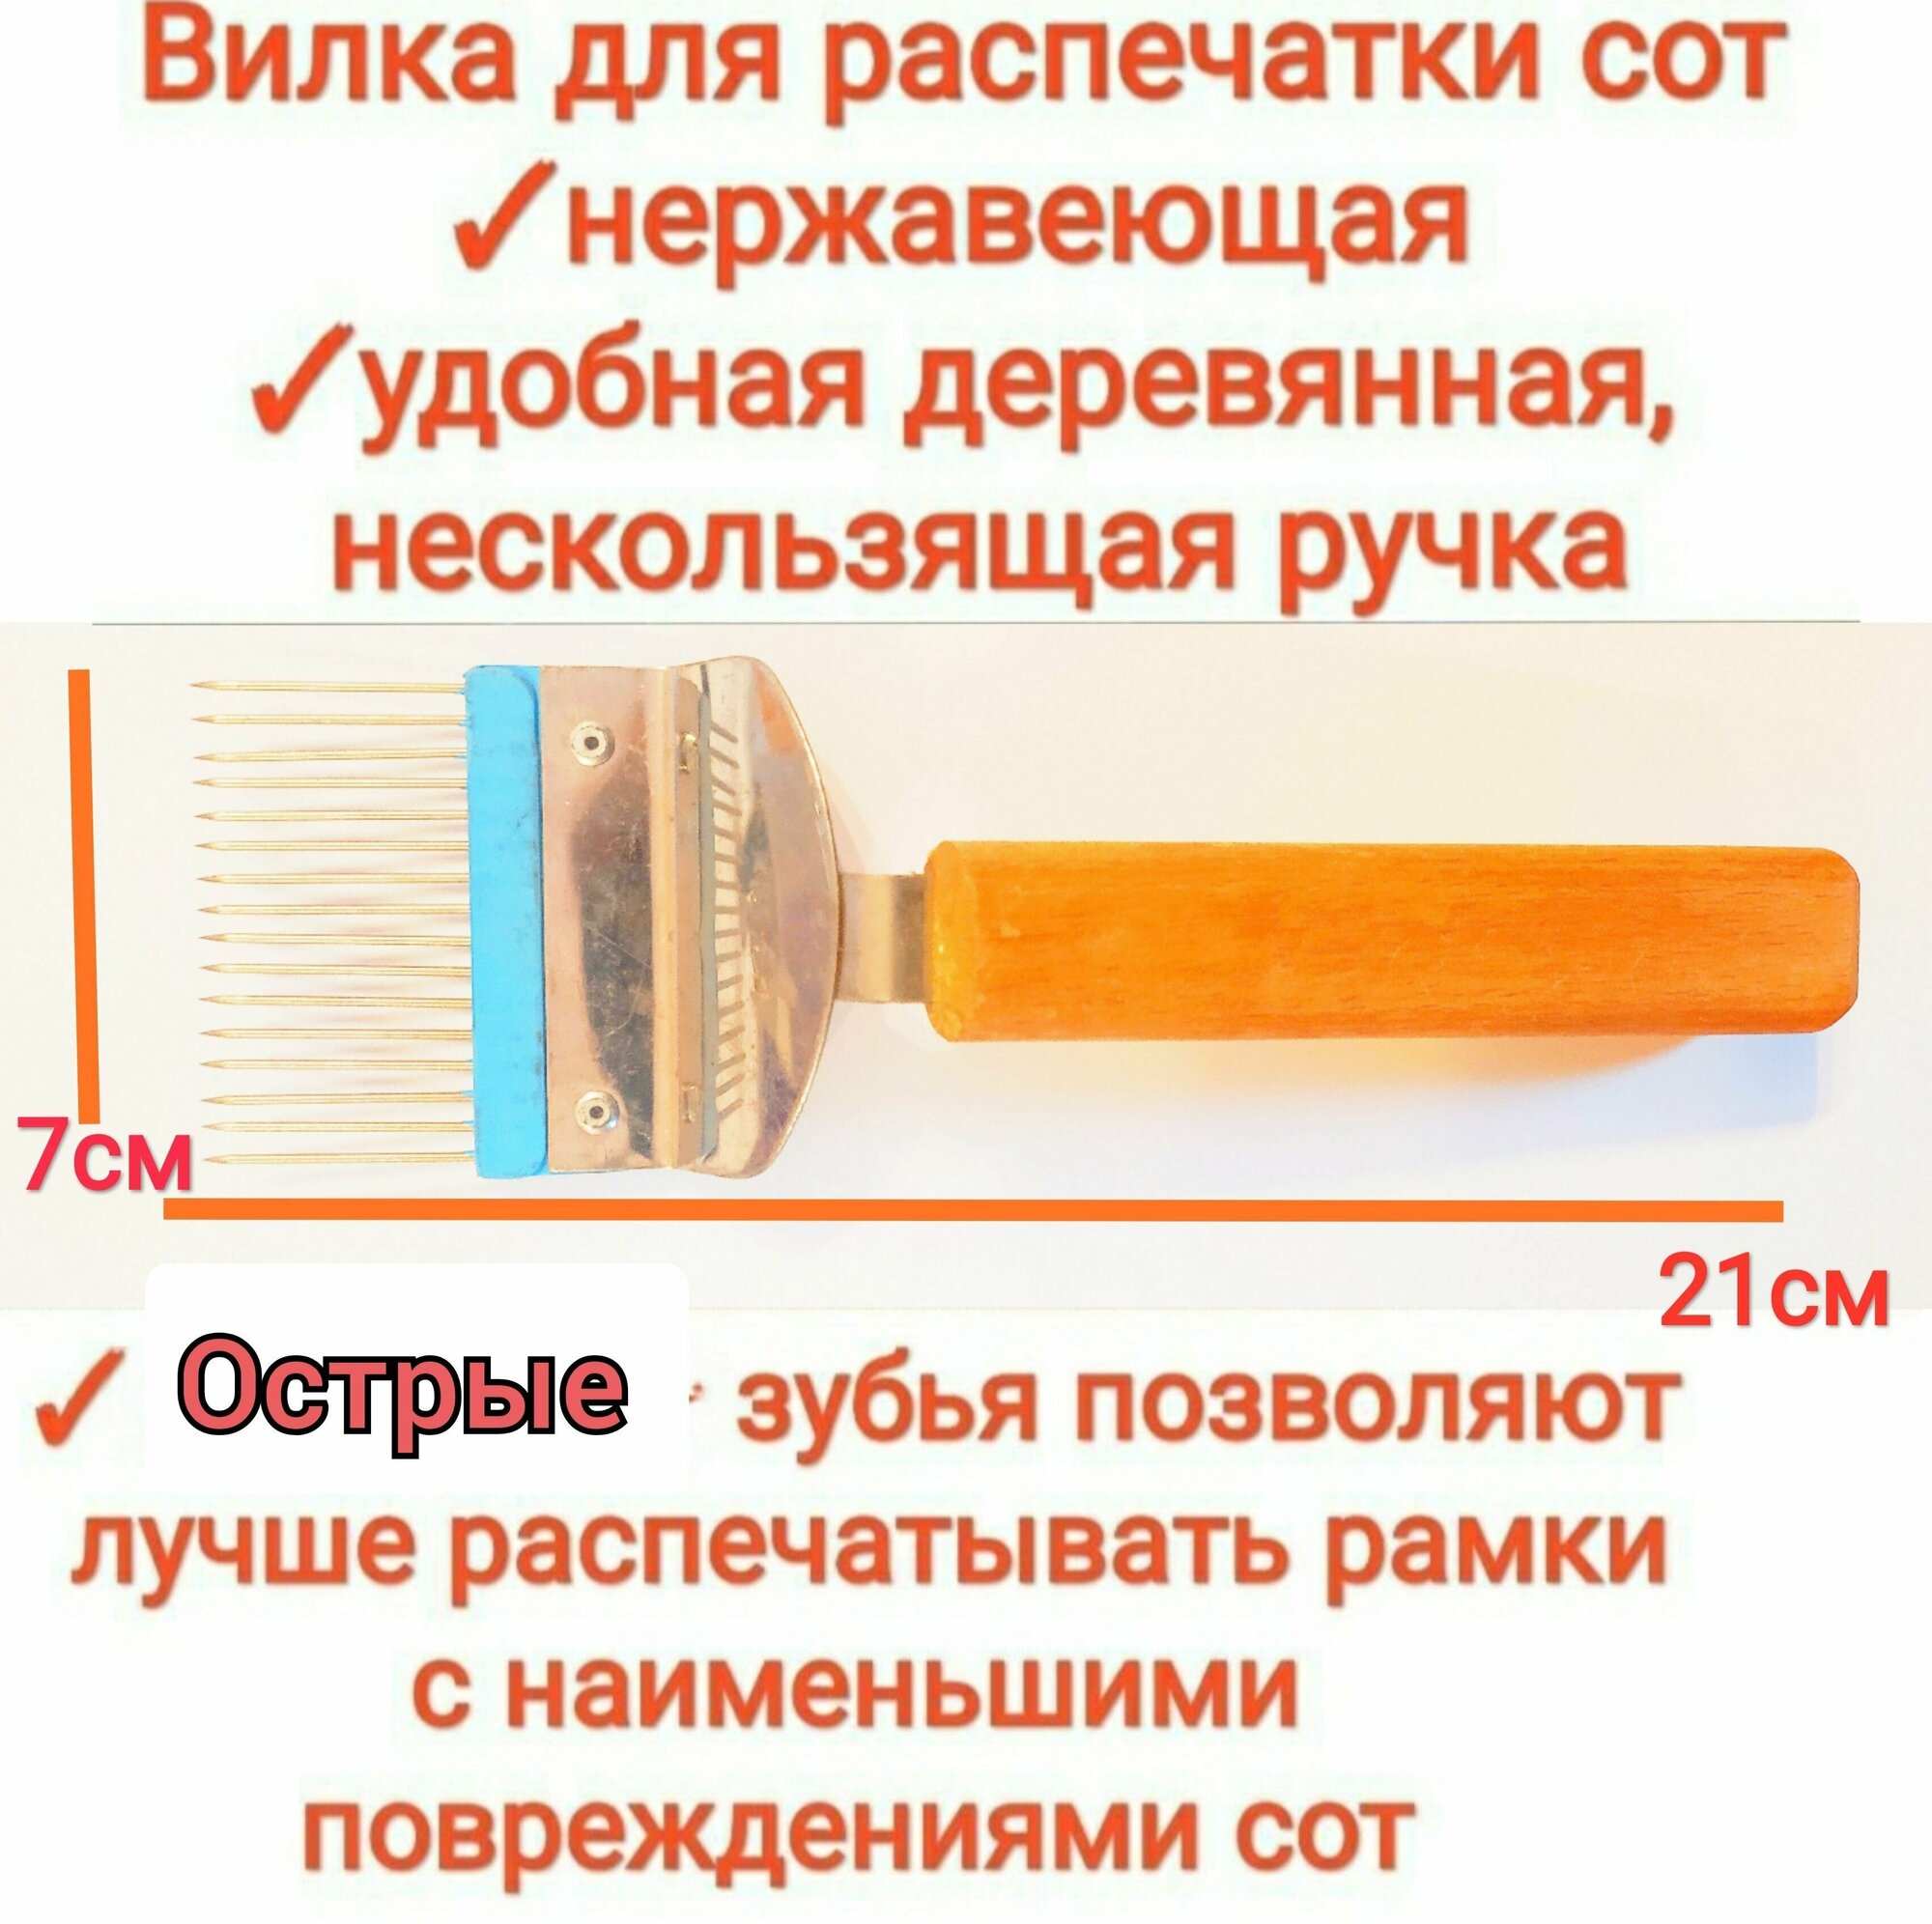 Вилка для распечатки сот (пищевая нержавейка) для распечатки медовых рамок с острыми прямыми зубцами premium